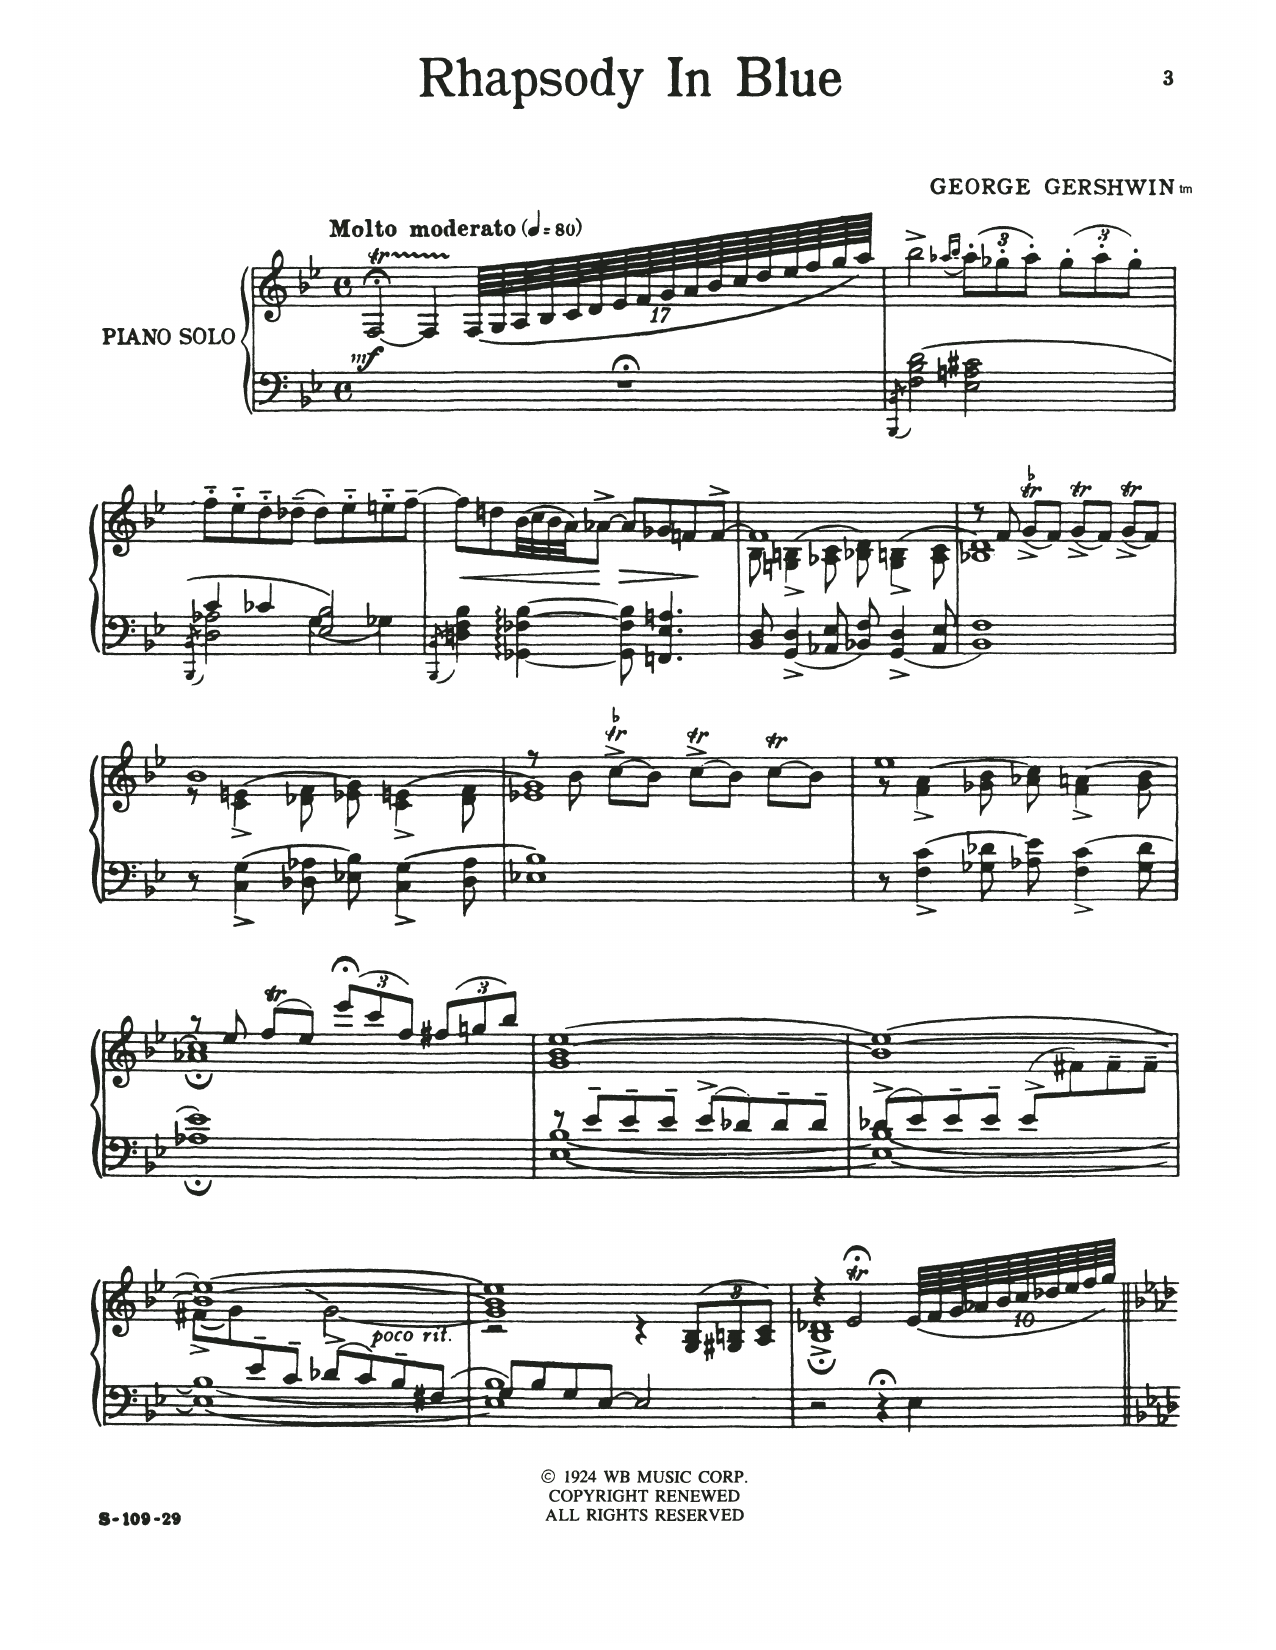 Download George Gershwin Rhapsody In Blue (full version) Sheet Music